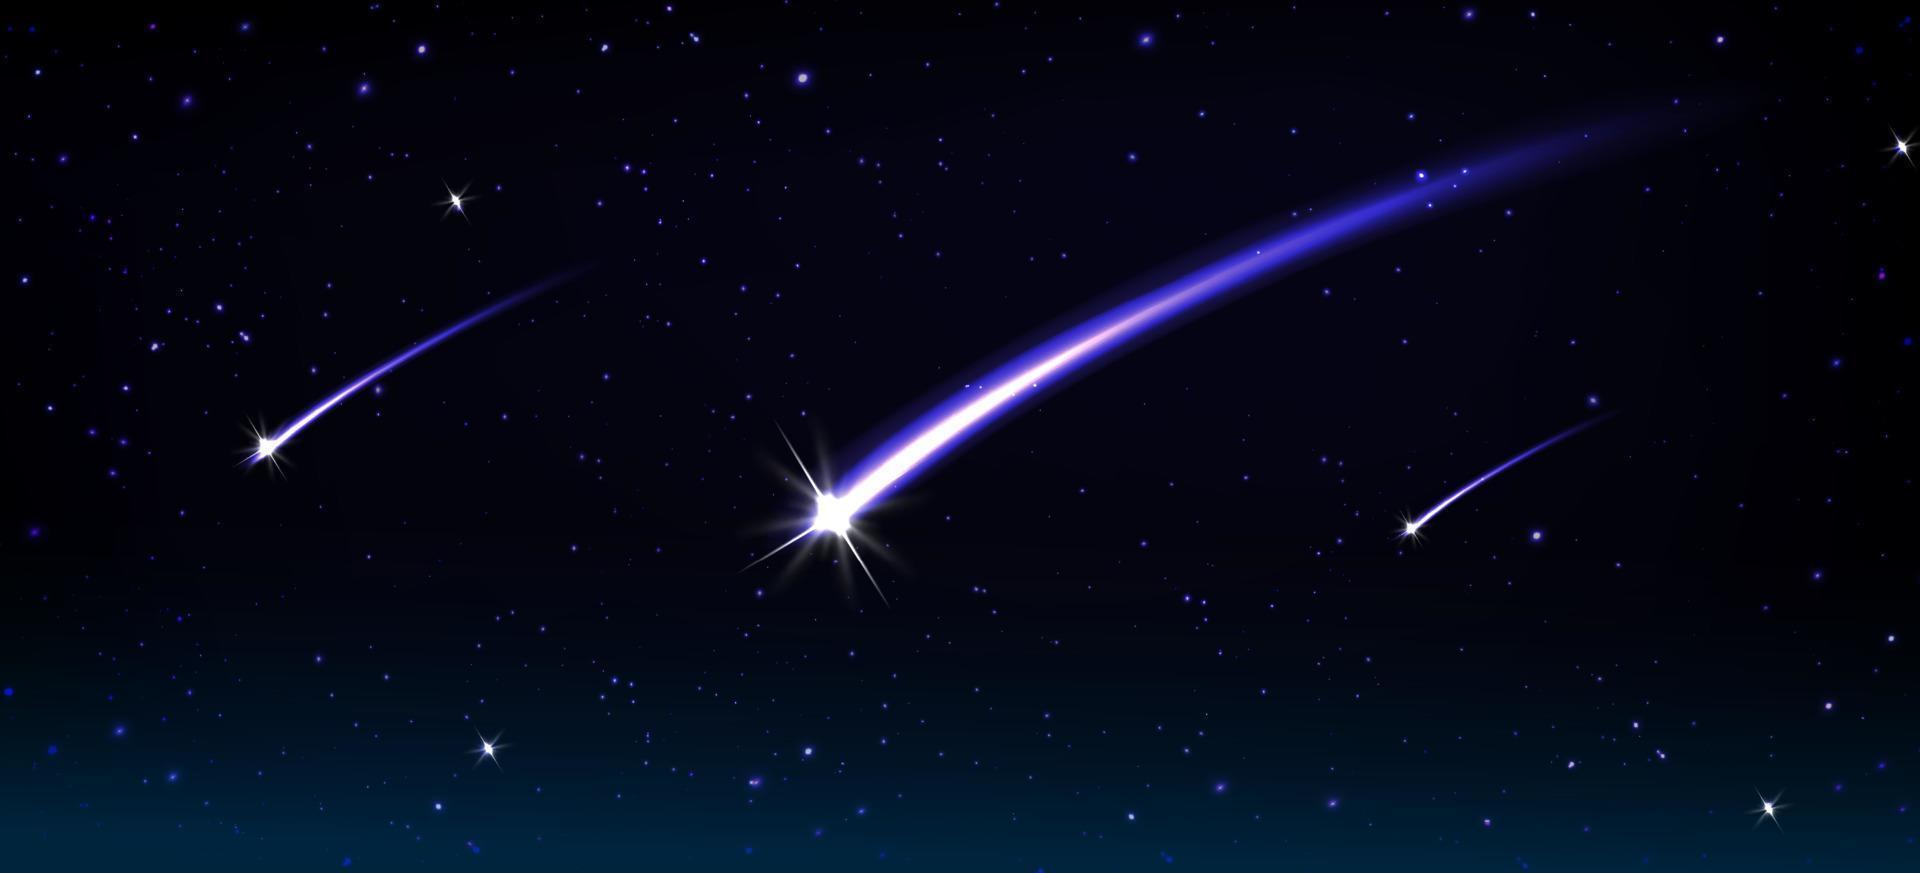 vallend kometen, asteroïden of meteoren in ruimte vector